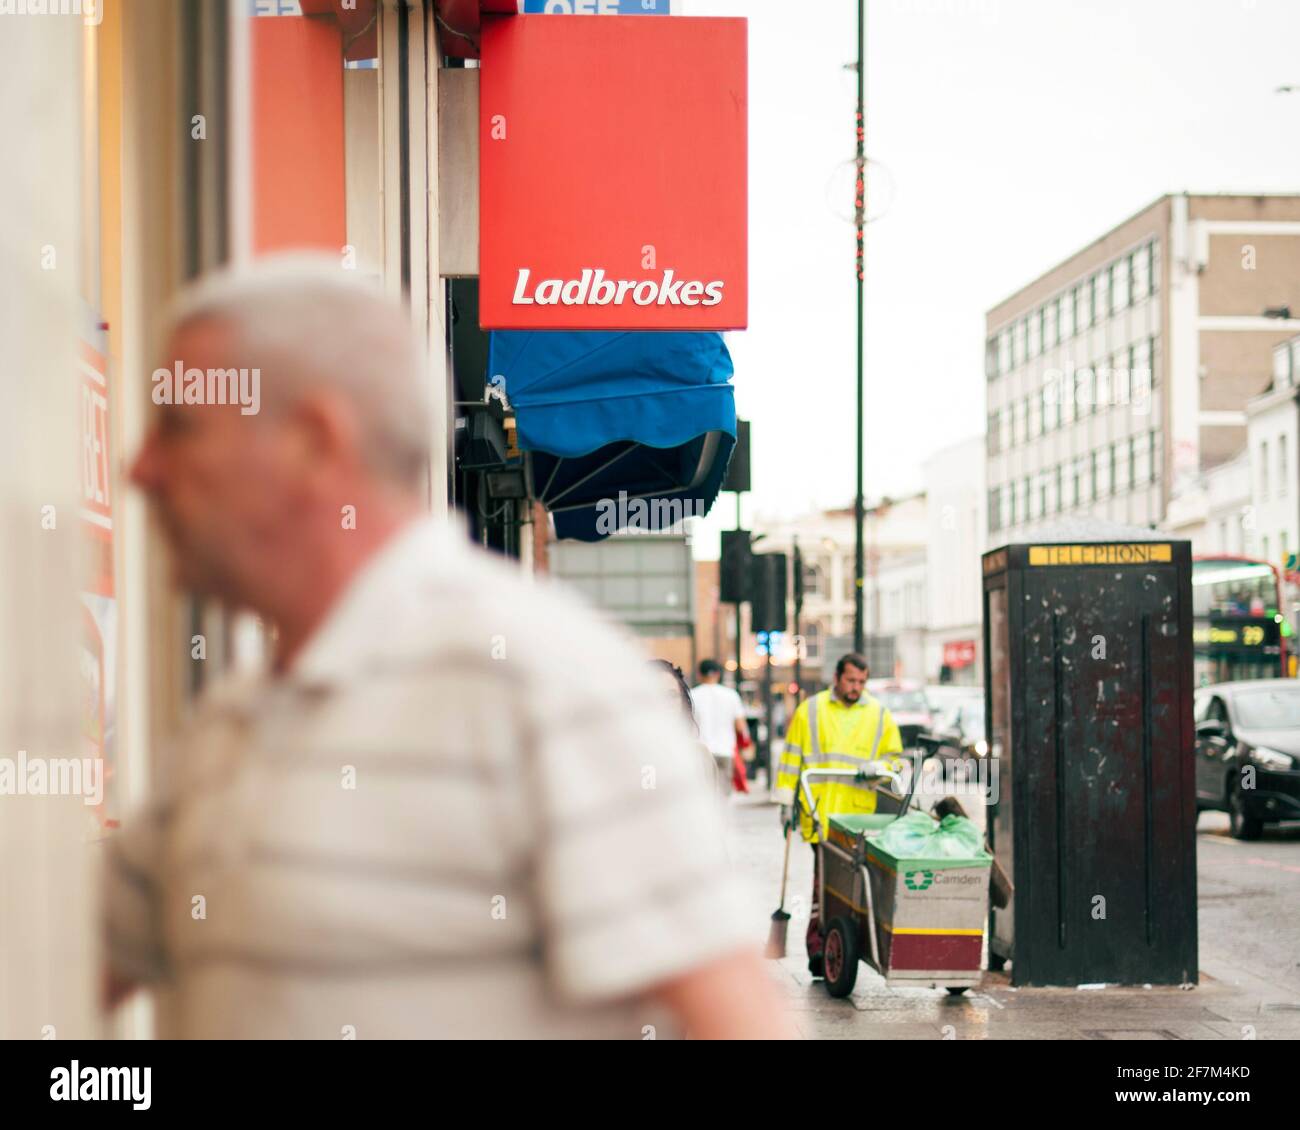 Giocatore irriconoscibile, uomo di mezza età che cammina in un negozio di scommesse Ladbrokes. Scommesse sportive, gioco d'azzardo stile di vita. Camden High St, Londra, Regno Unito. Ago 2015 Foto Stock